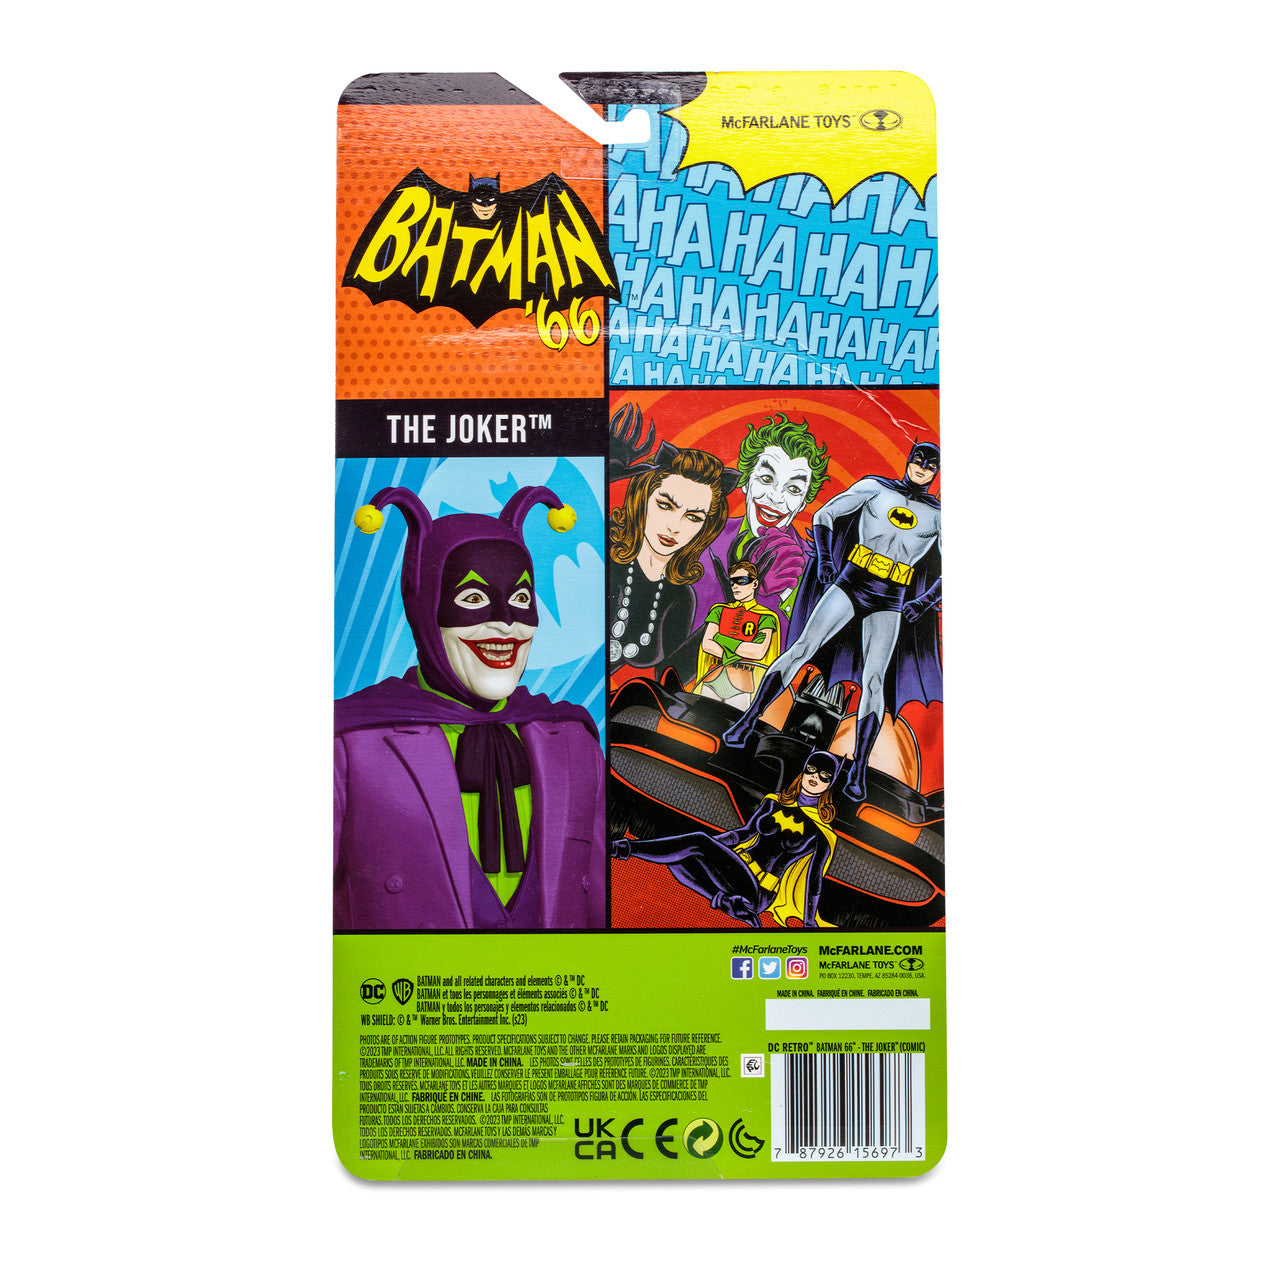 McFarlane DC Retro Figura de Accion: Batman 66 Comic - The Jocker 6 Pulgadas